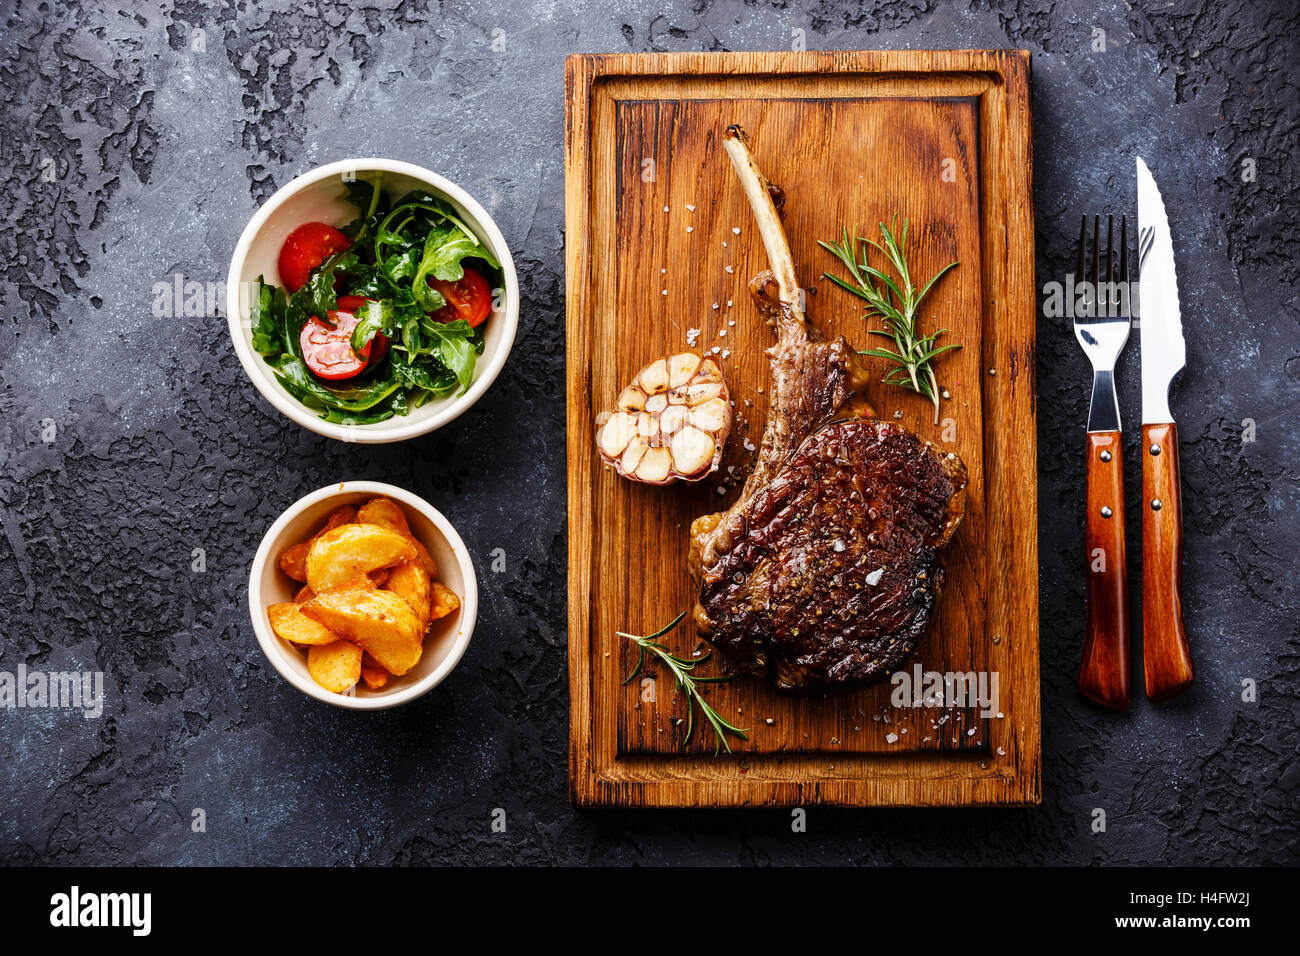 Vom Grill Grill Steak auf Knochen Kalbfleisch Rippe mit Kartoffelspalten und Salat mit Tomaten und Rucola auf dunklem Hintergrund Stockfoto